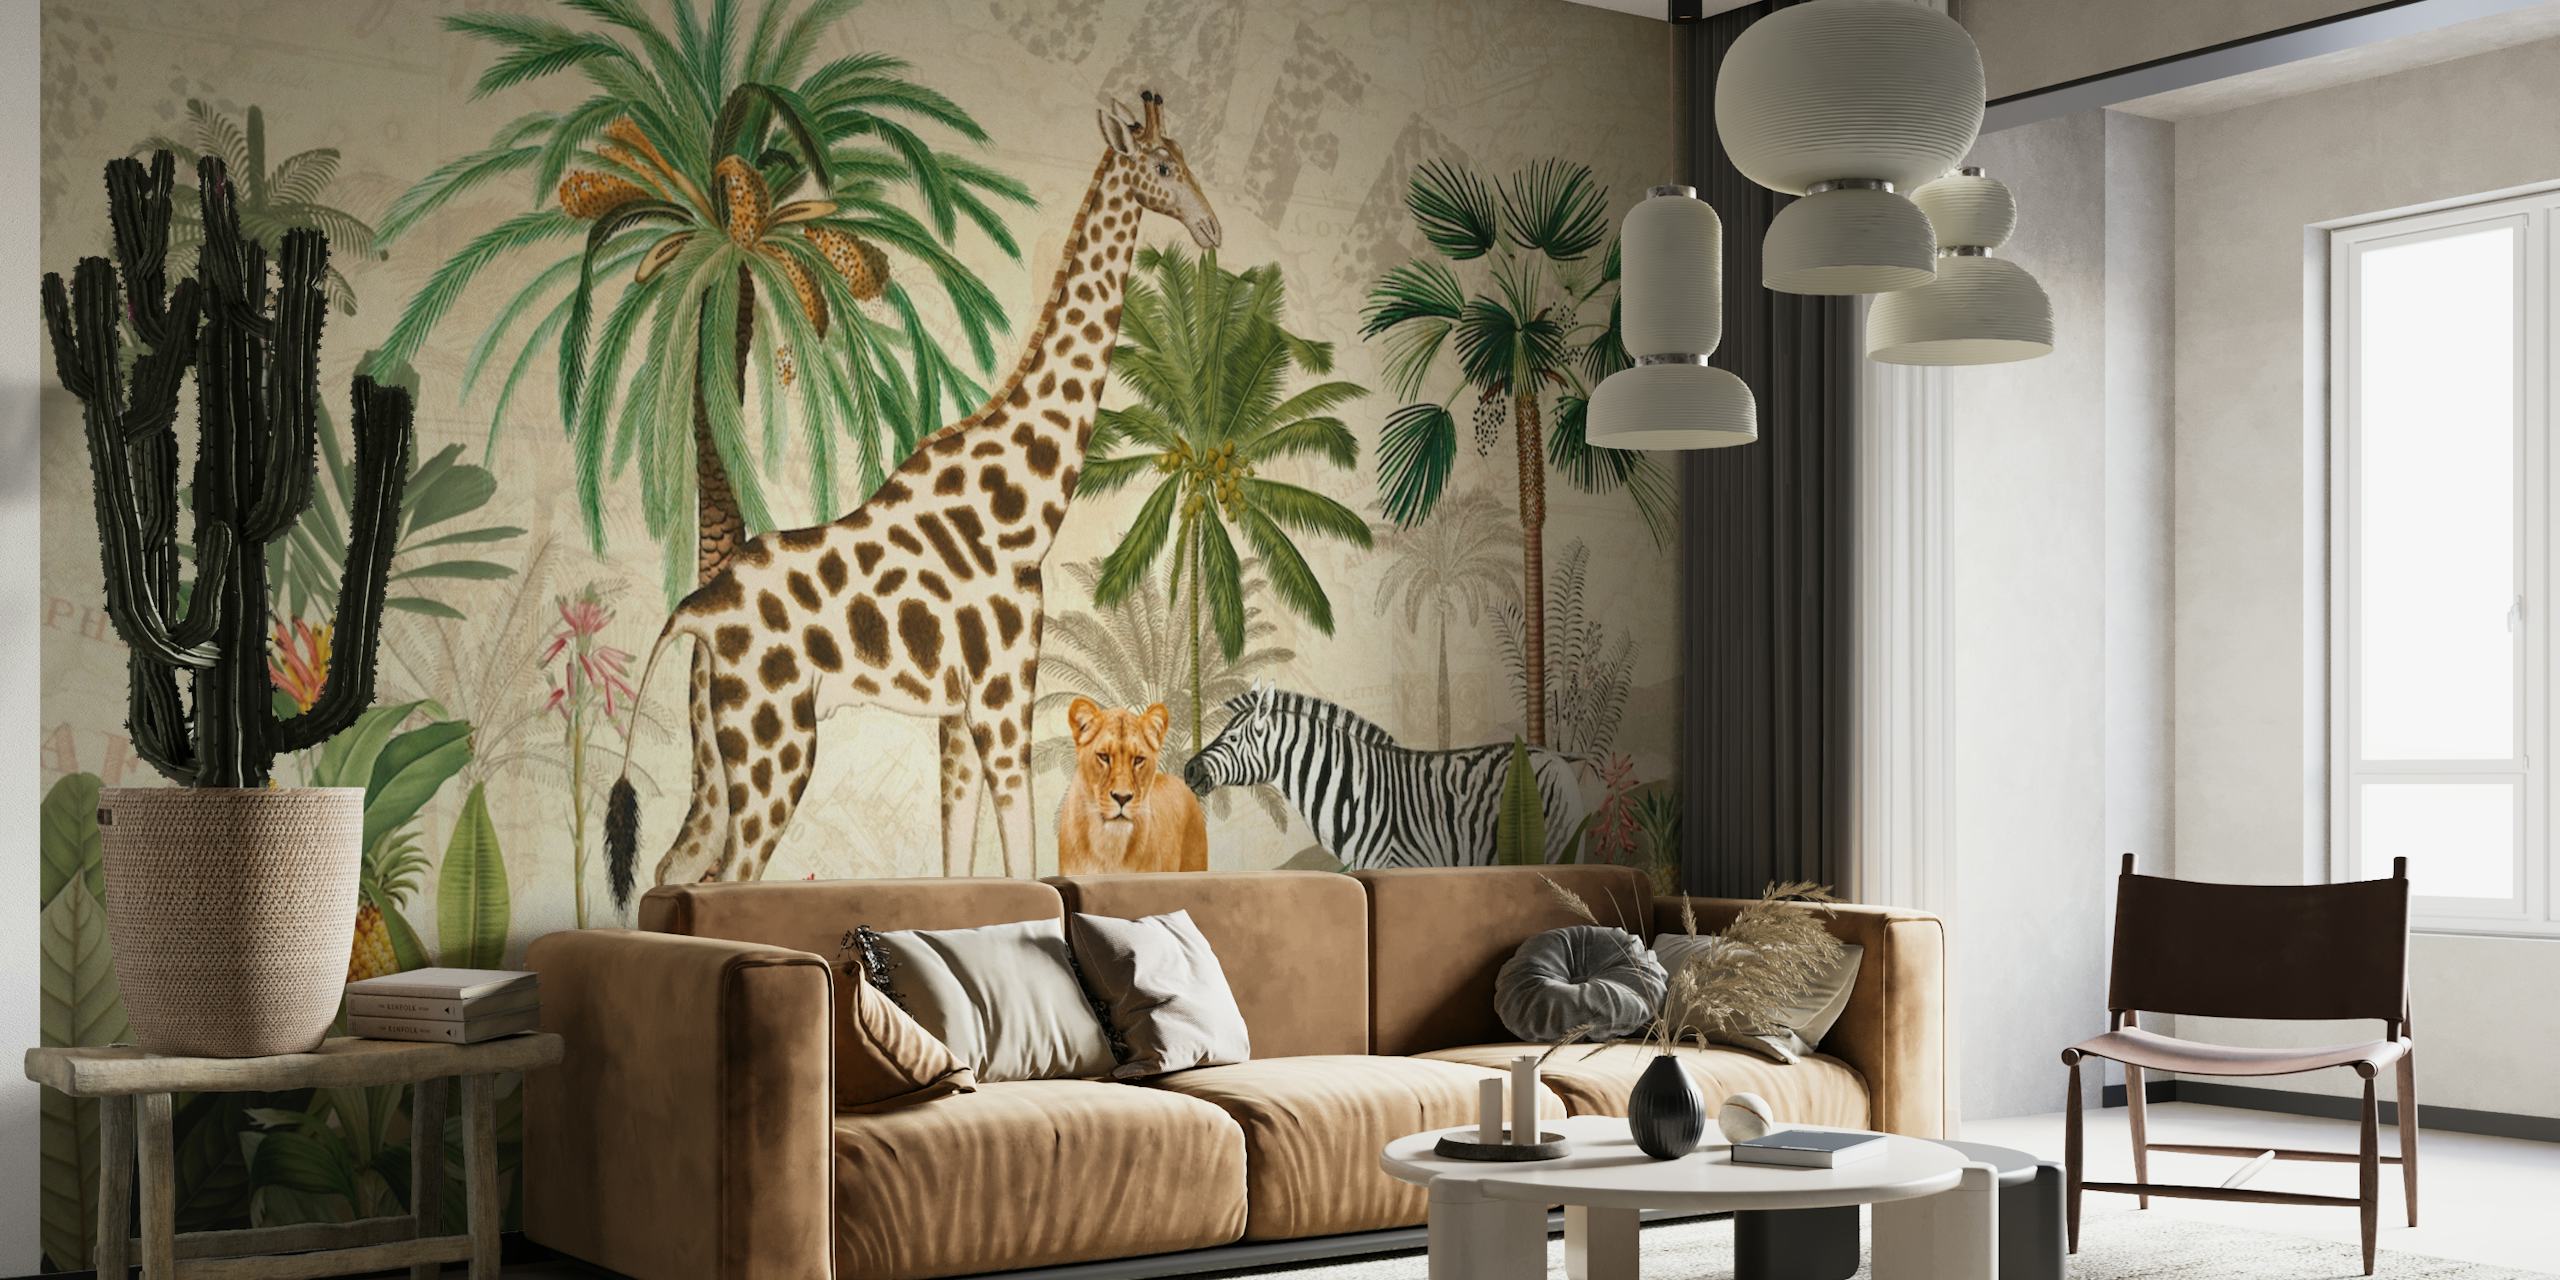 Fototapeta safari w dżungli w stylu vintage przedstawiająca żyrafy, lamparty i zebry w bujnej scenerii